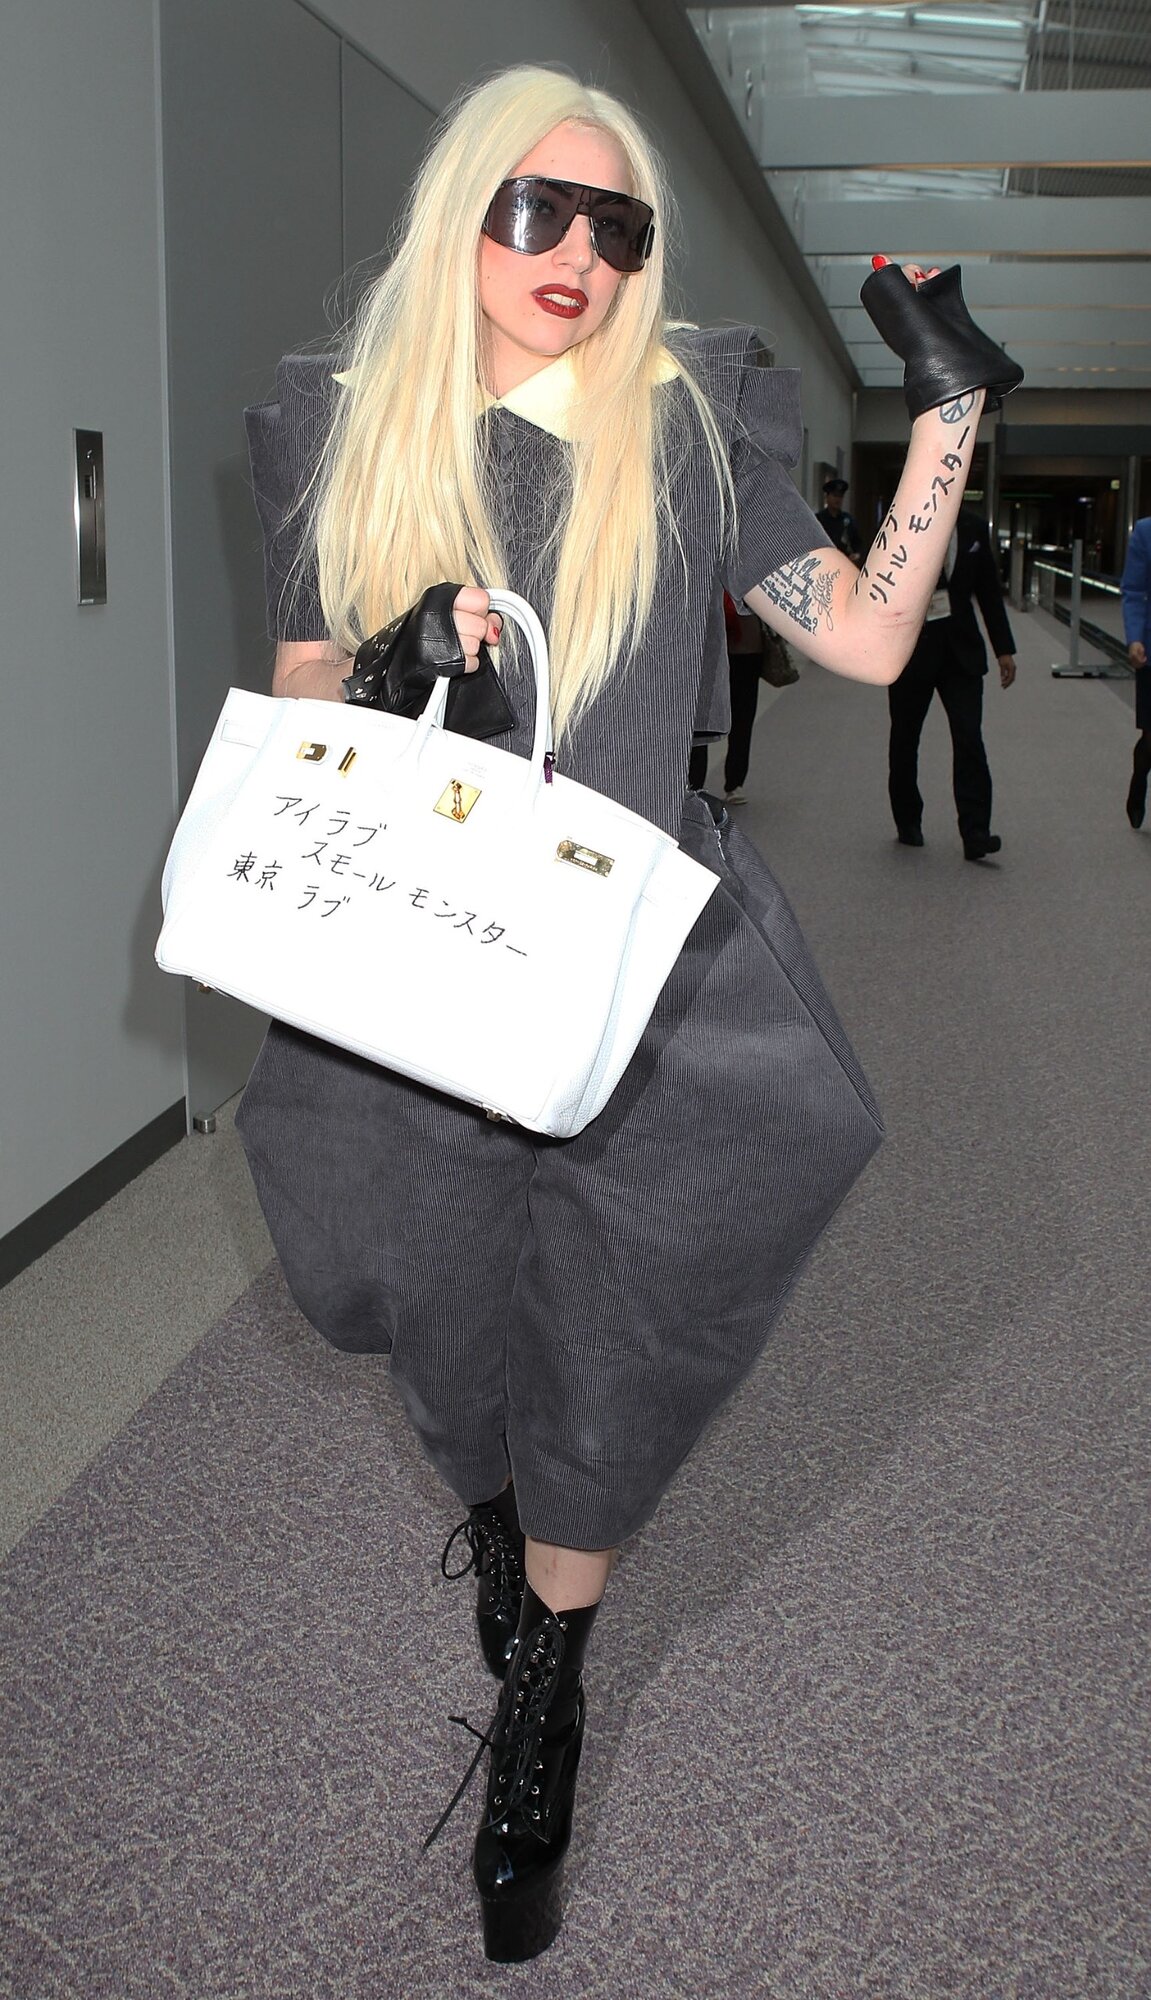 NARITA, JAPÁN - ÁPRILIS 13.: Lady Gaga amerikai popénekesnő érkezik a Narita nemzetközi repülőtérre 2010. április 13-án Naritában, Japánban. (Fotó: Koichi Kamoshida/Getty Images)